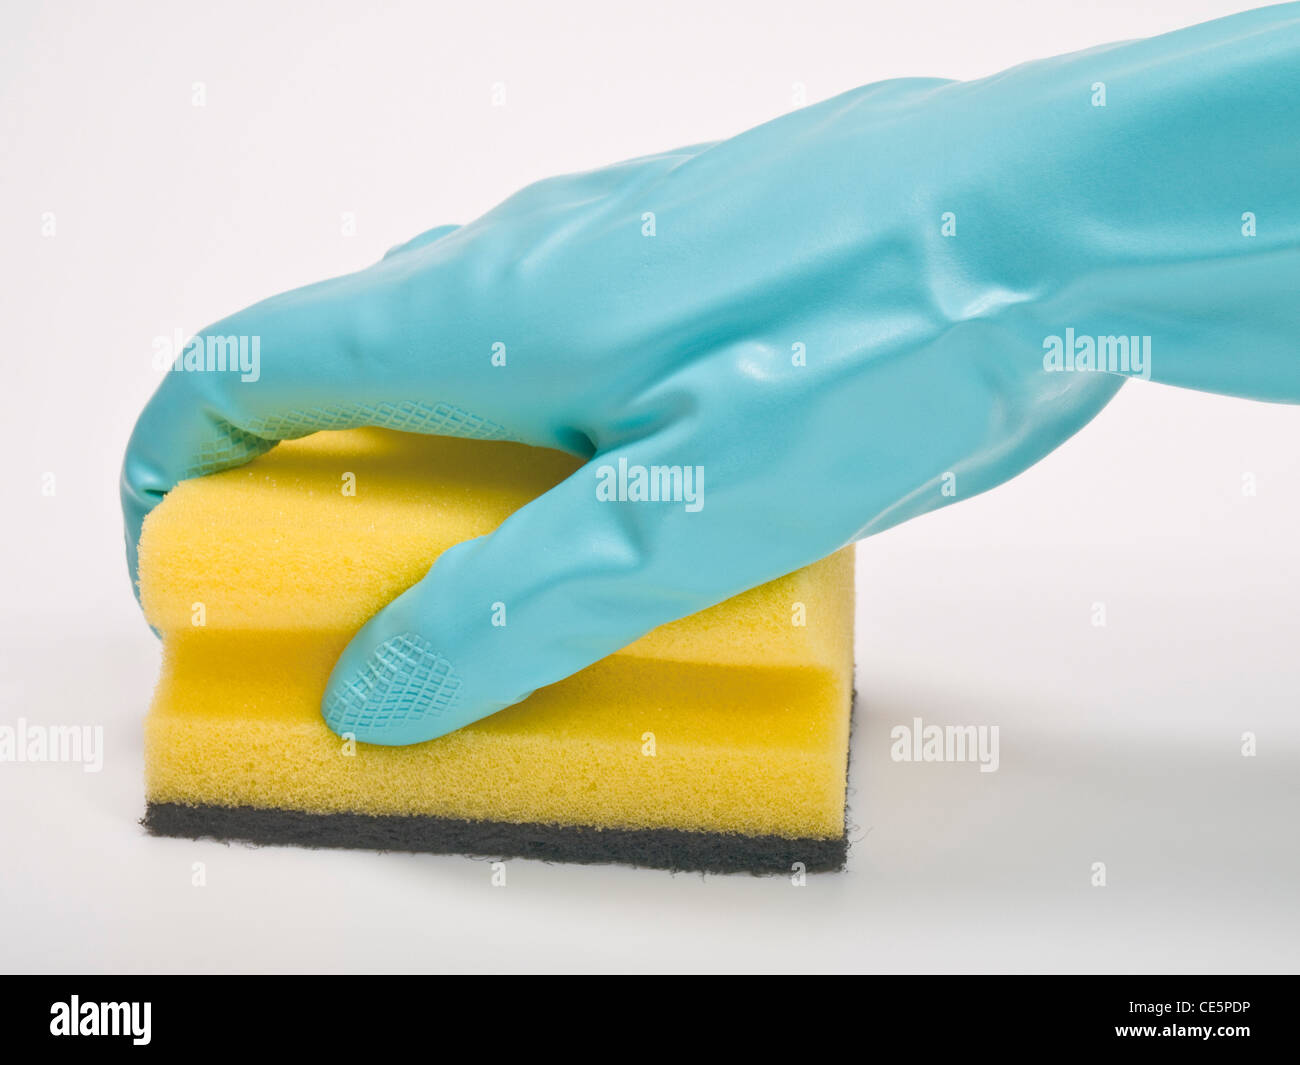 ein Topfschwamm wird mit einem Gummihandschuh festgehalten | a pot sponge is holding tight with a rubber glove Stock Photo